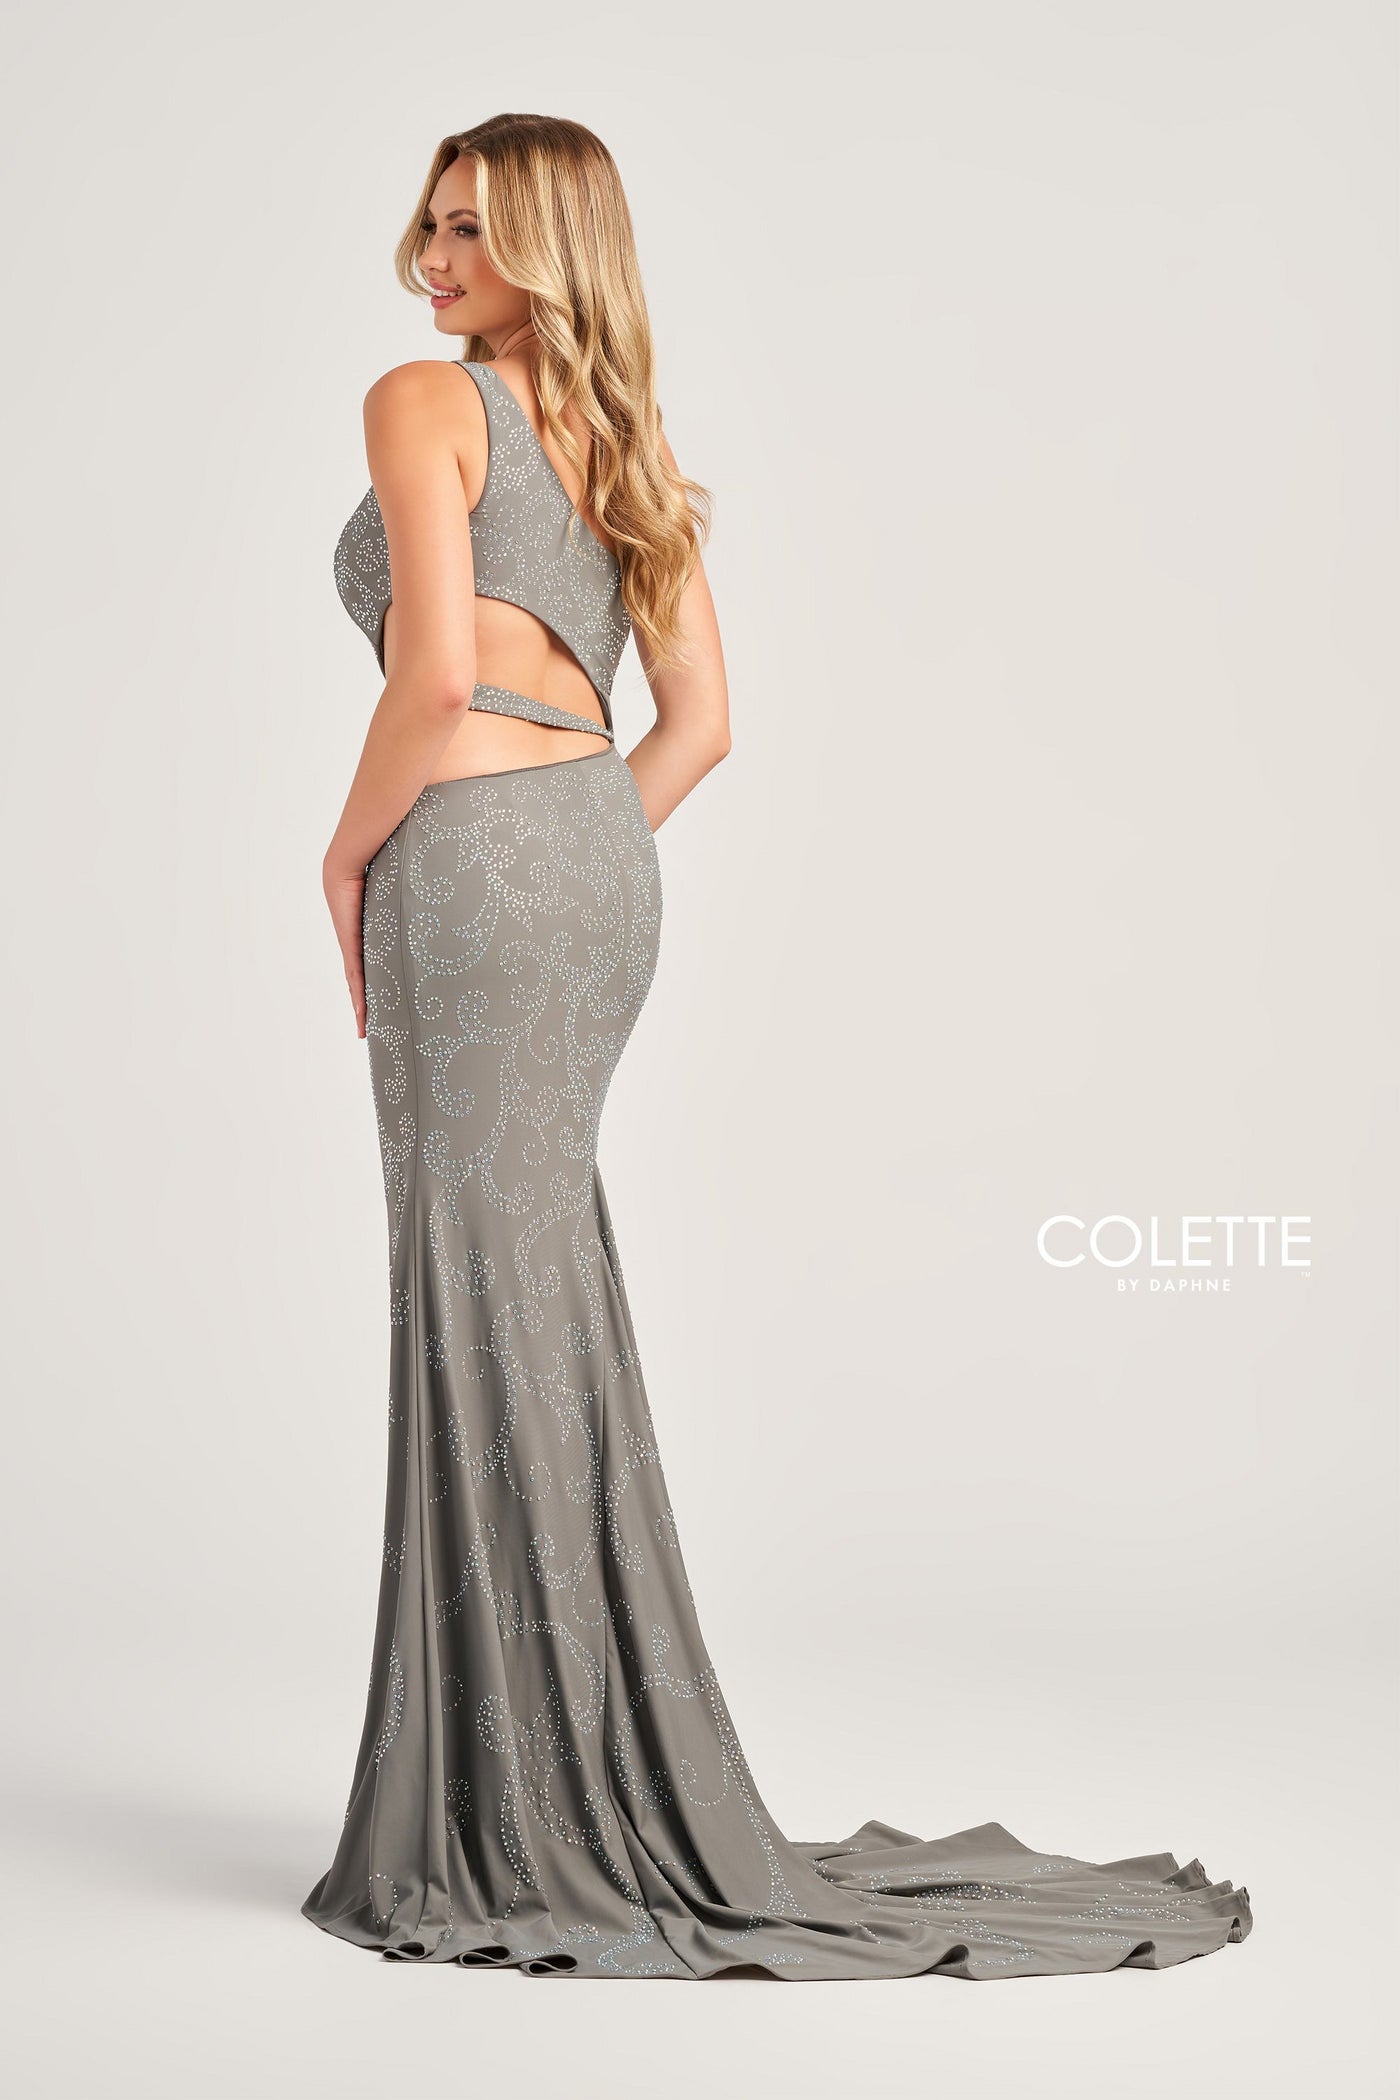 Colette CL5281